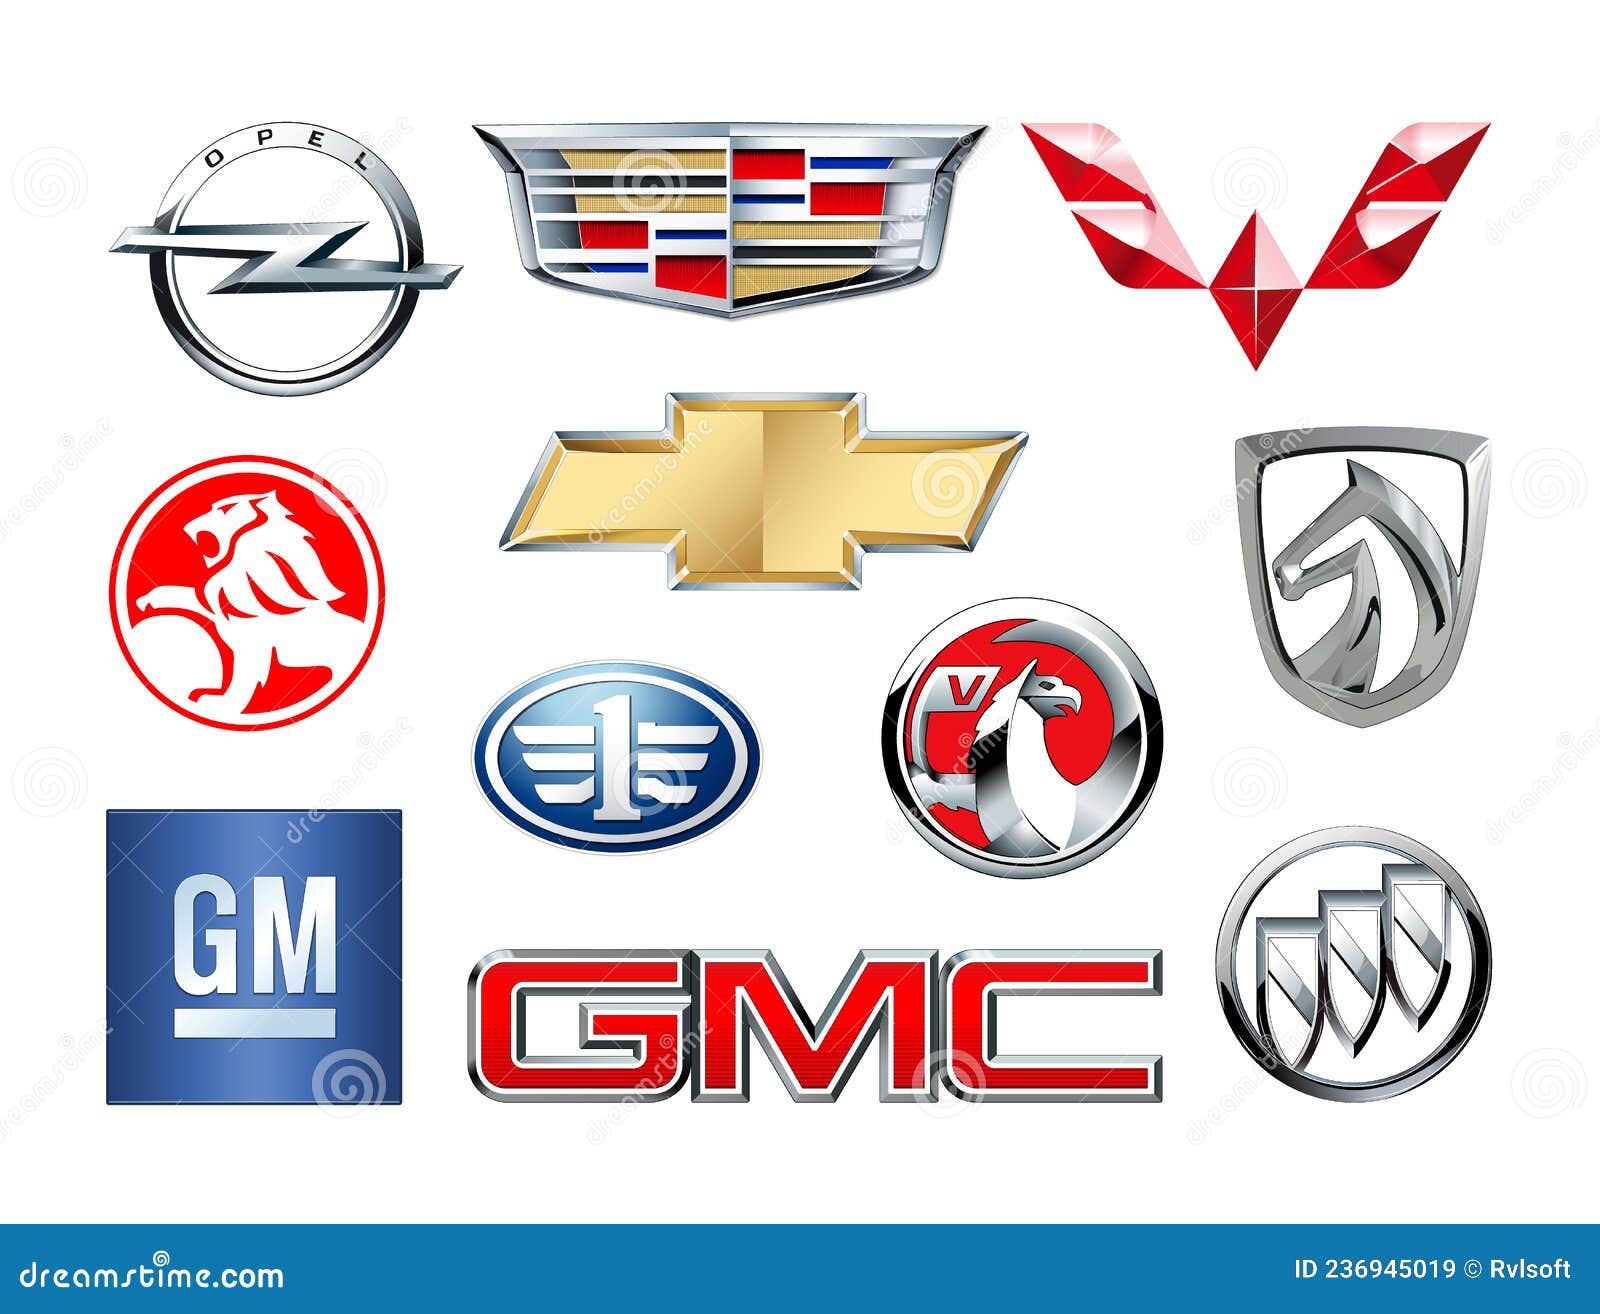 Grupo Internacional De Automóveis Da General Motors, Bandeiras Com  Logotipo, Ilustração Fotografia Editorial - Ilustração de publicar,  logotipo: 156833997